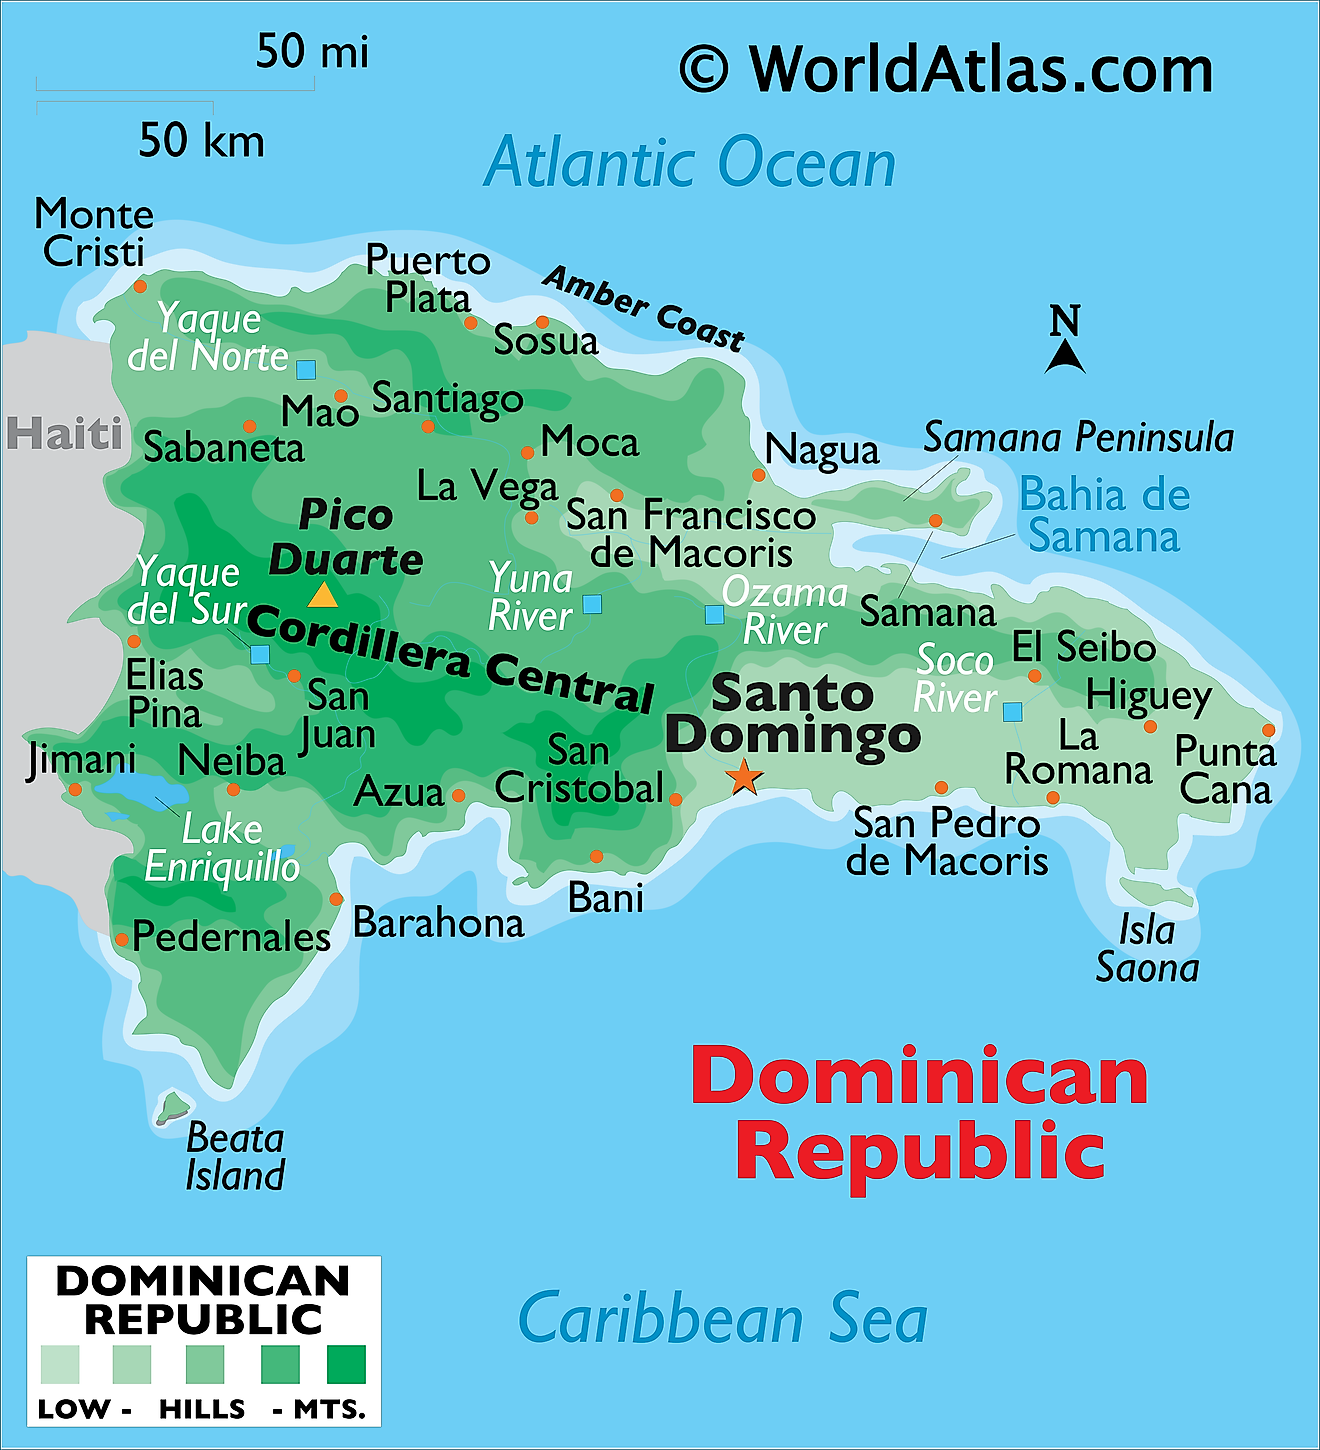 Mapa Físico de República Dominicana mostrando relieve, islas, ríos, montañas, lagos, ciudades importantes y más.